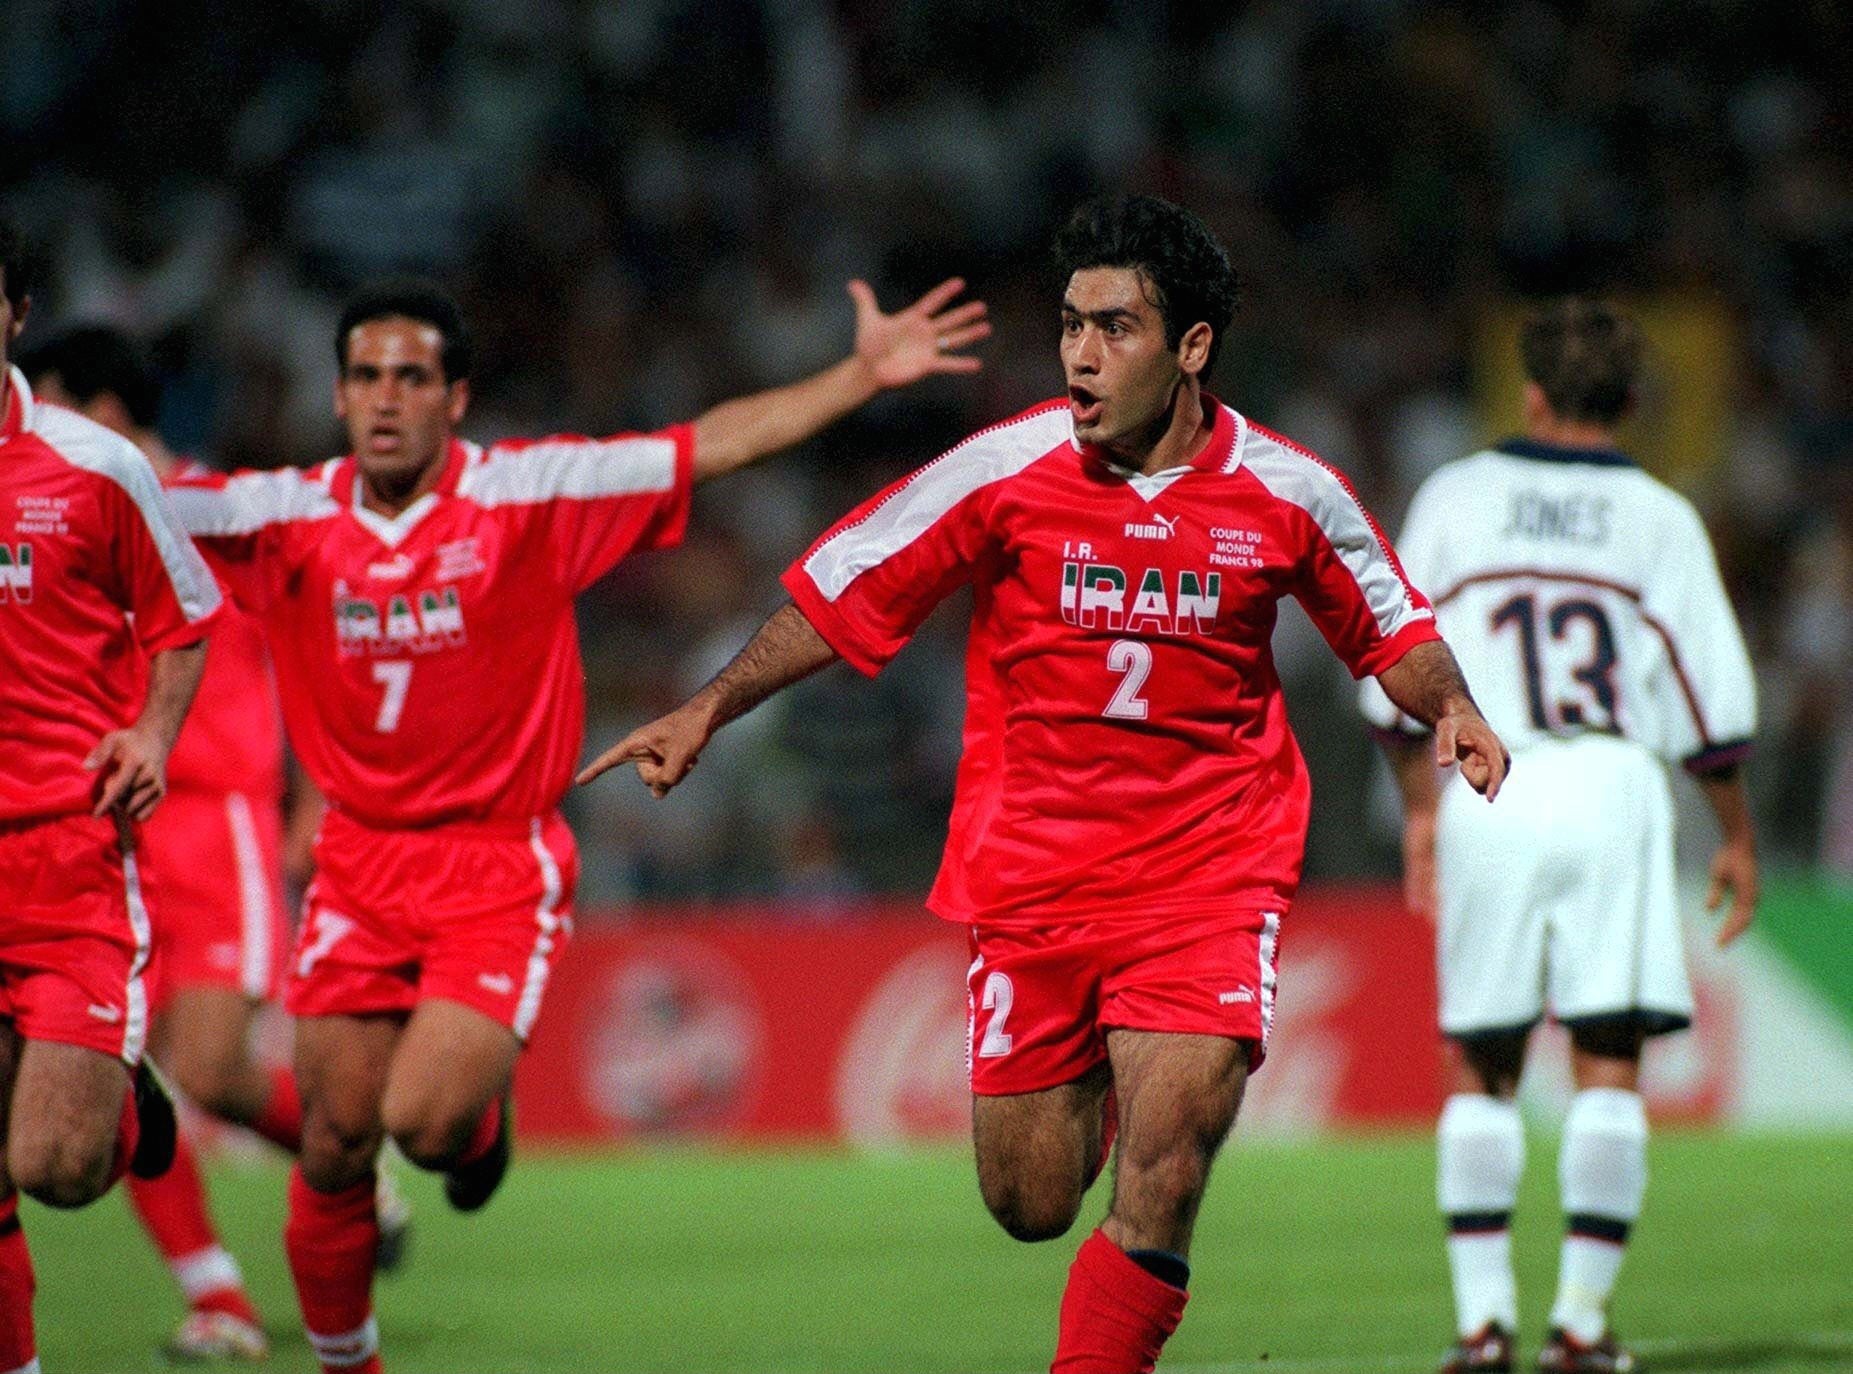 Iran memorably beat USA 2-1 at World Cup 1998